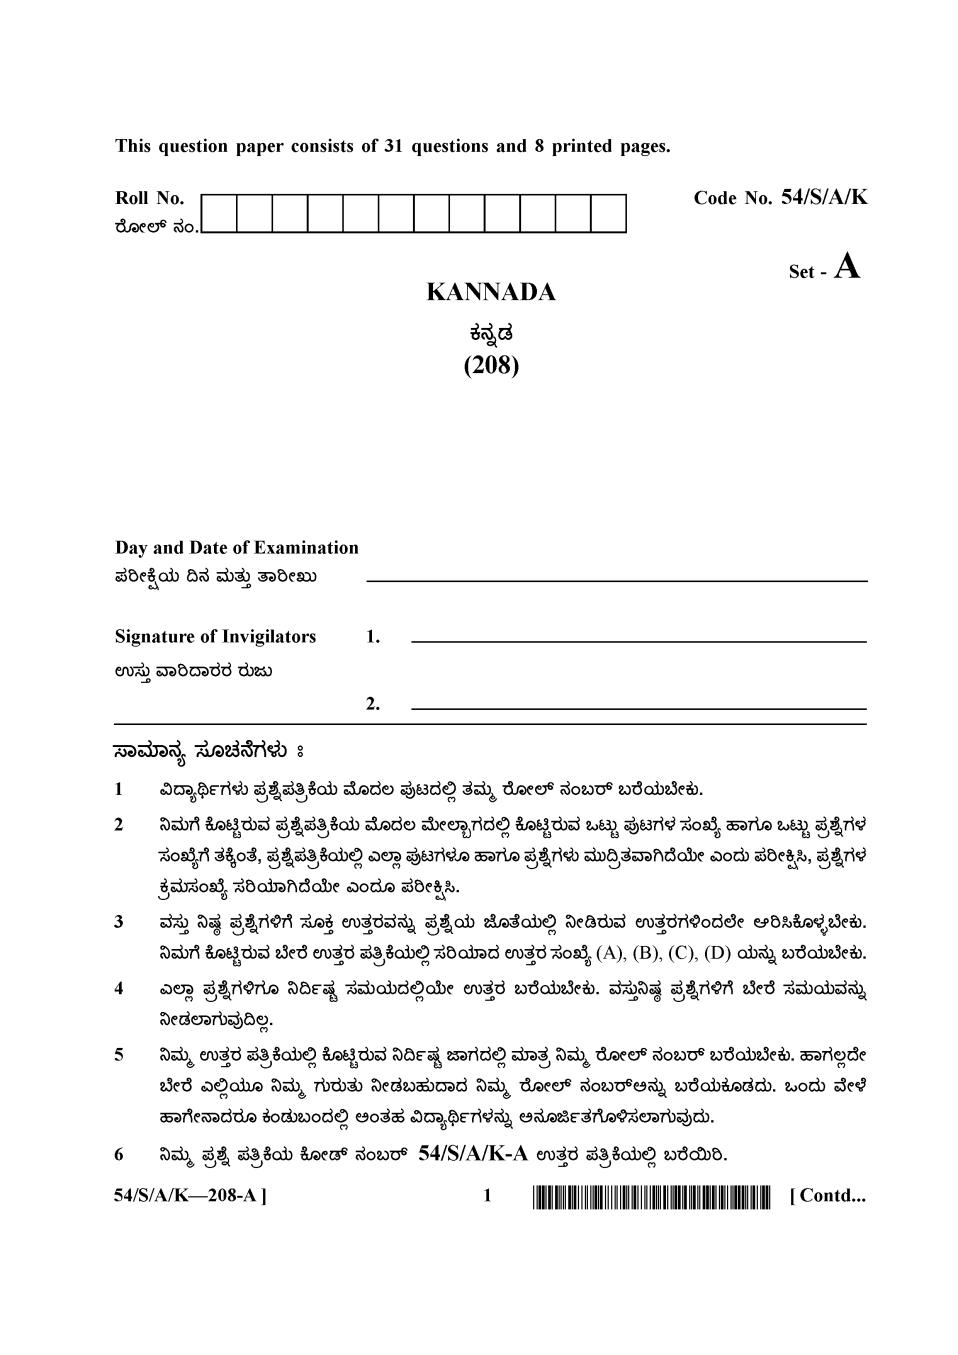 NIOS Class 10 Question Paper Apr 2017 - Kannada - Page 1